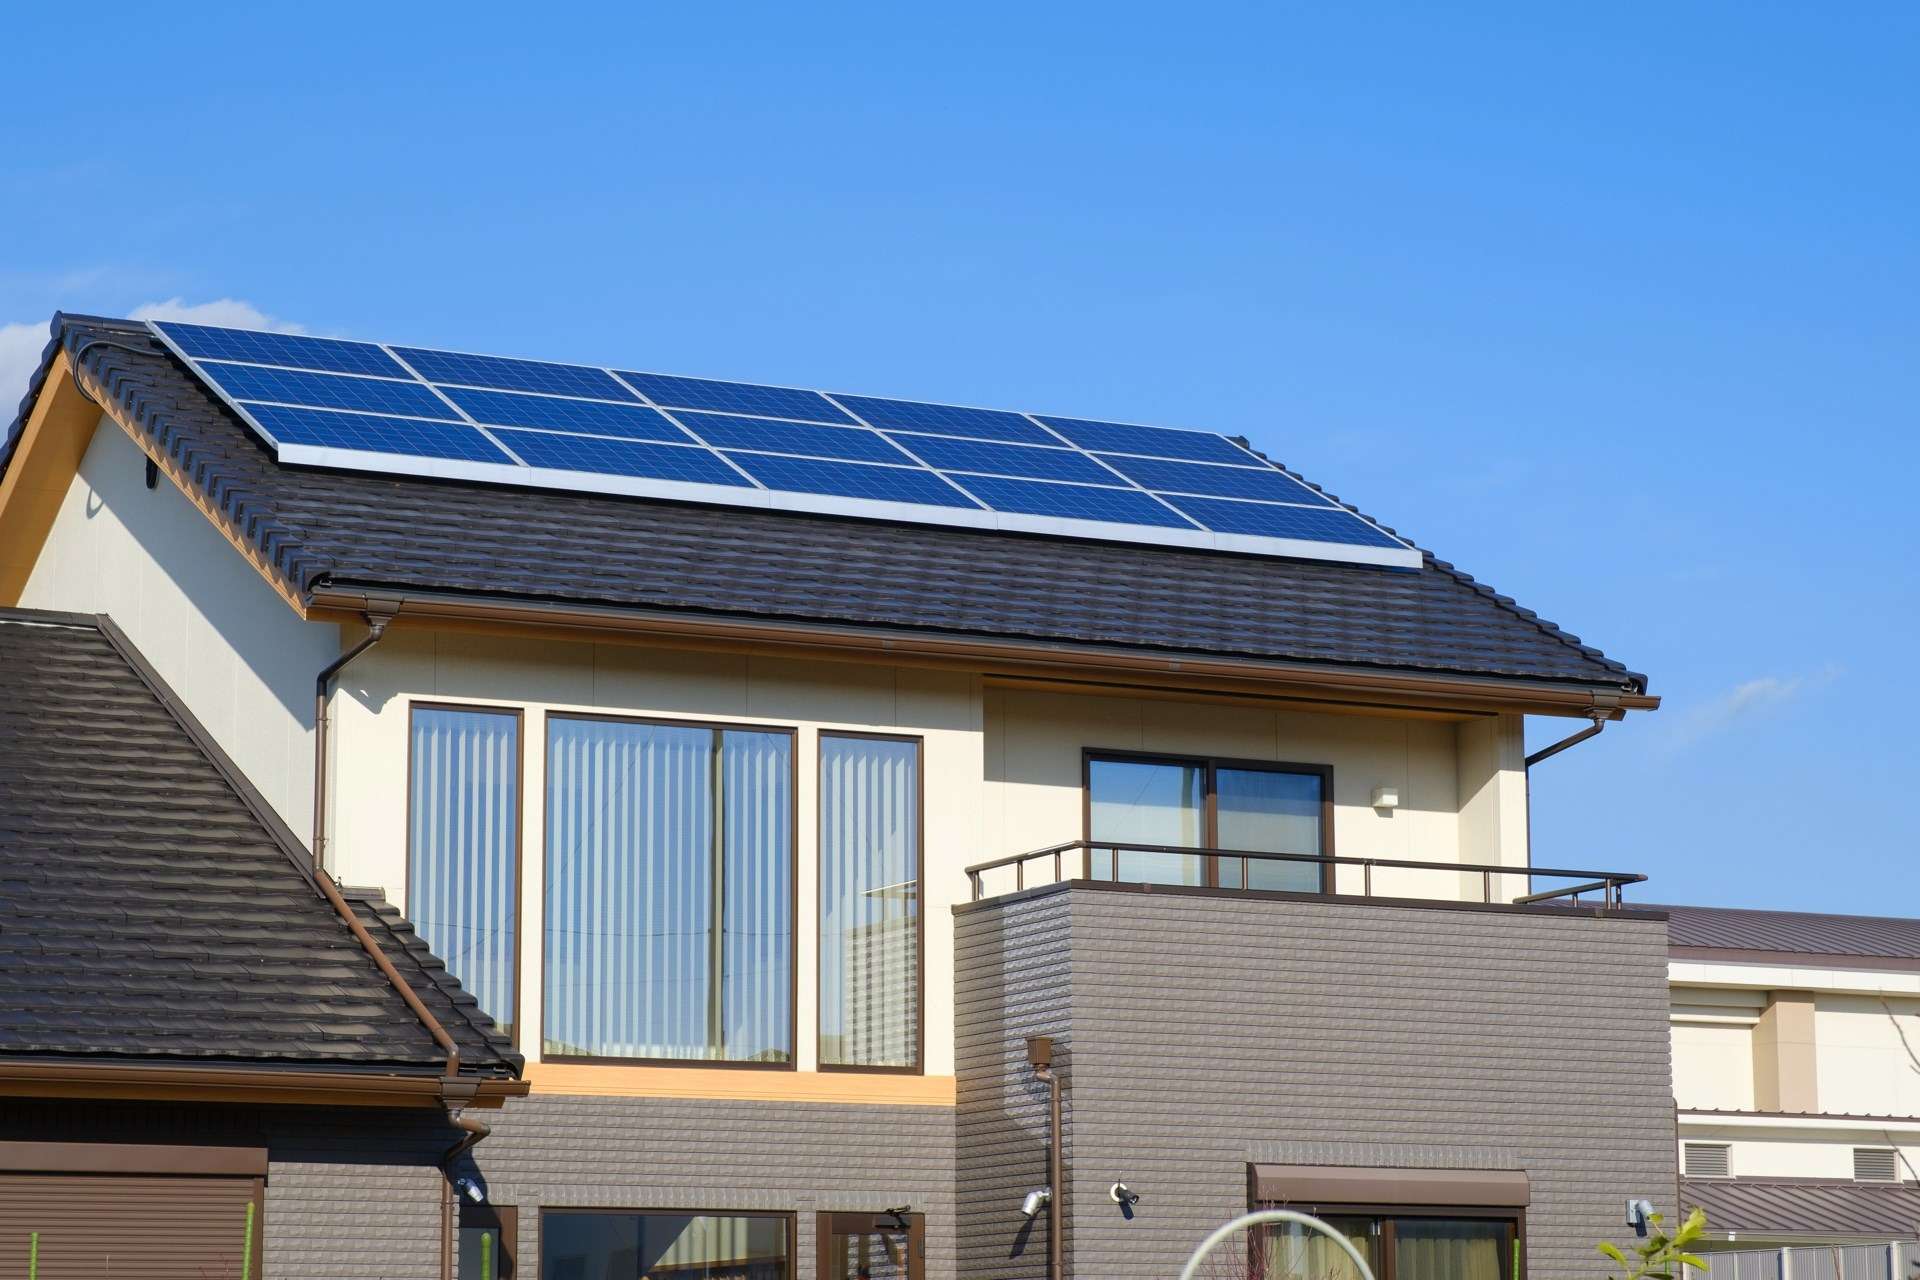 丁寧な対応により信頼性の高い太陽光発電を長野市で実現